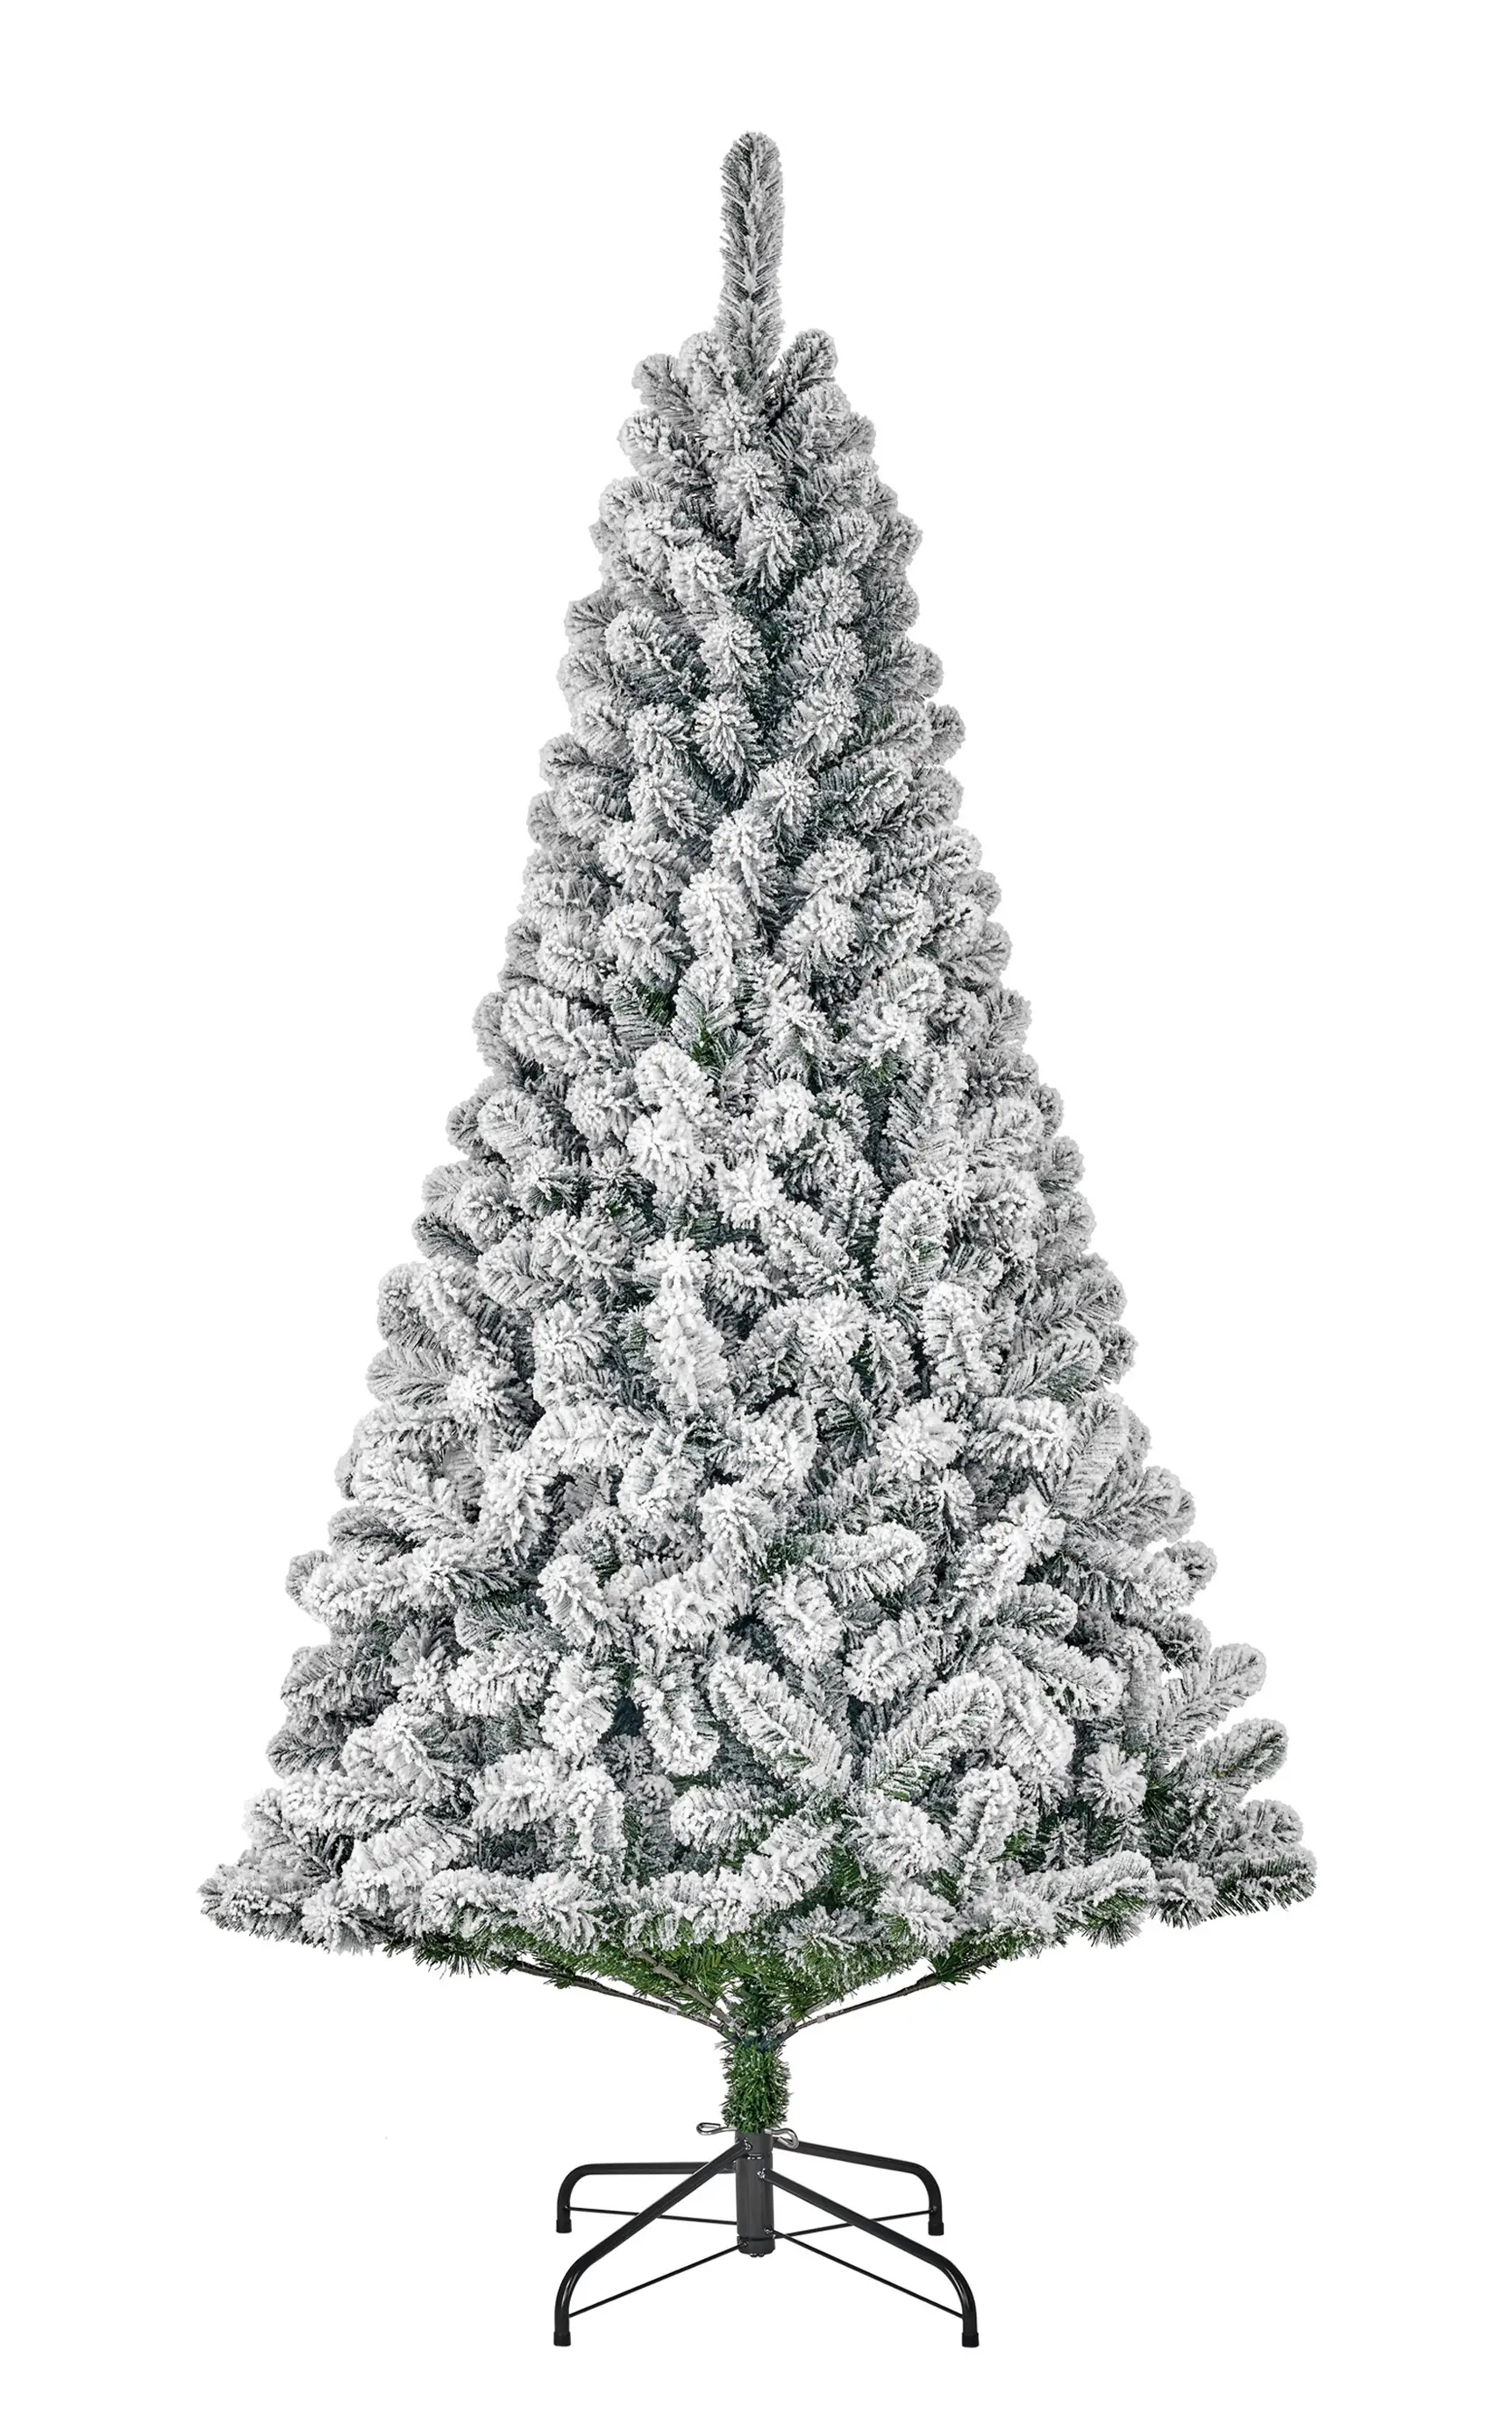 [Super willkommen] K眉nstlicher Weihnachtsbaum Millington